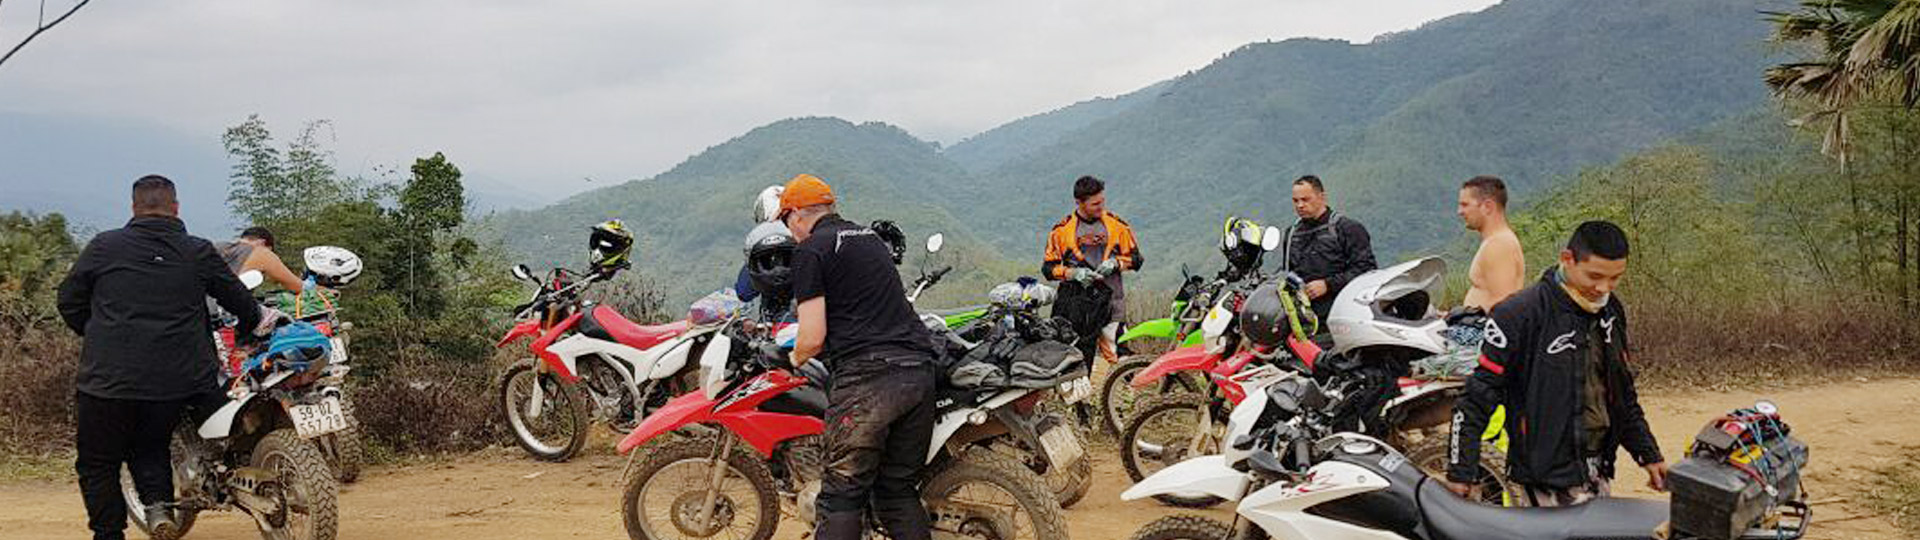 Luang Prabang Motorbike Tour and Waterfalls – 1 Day